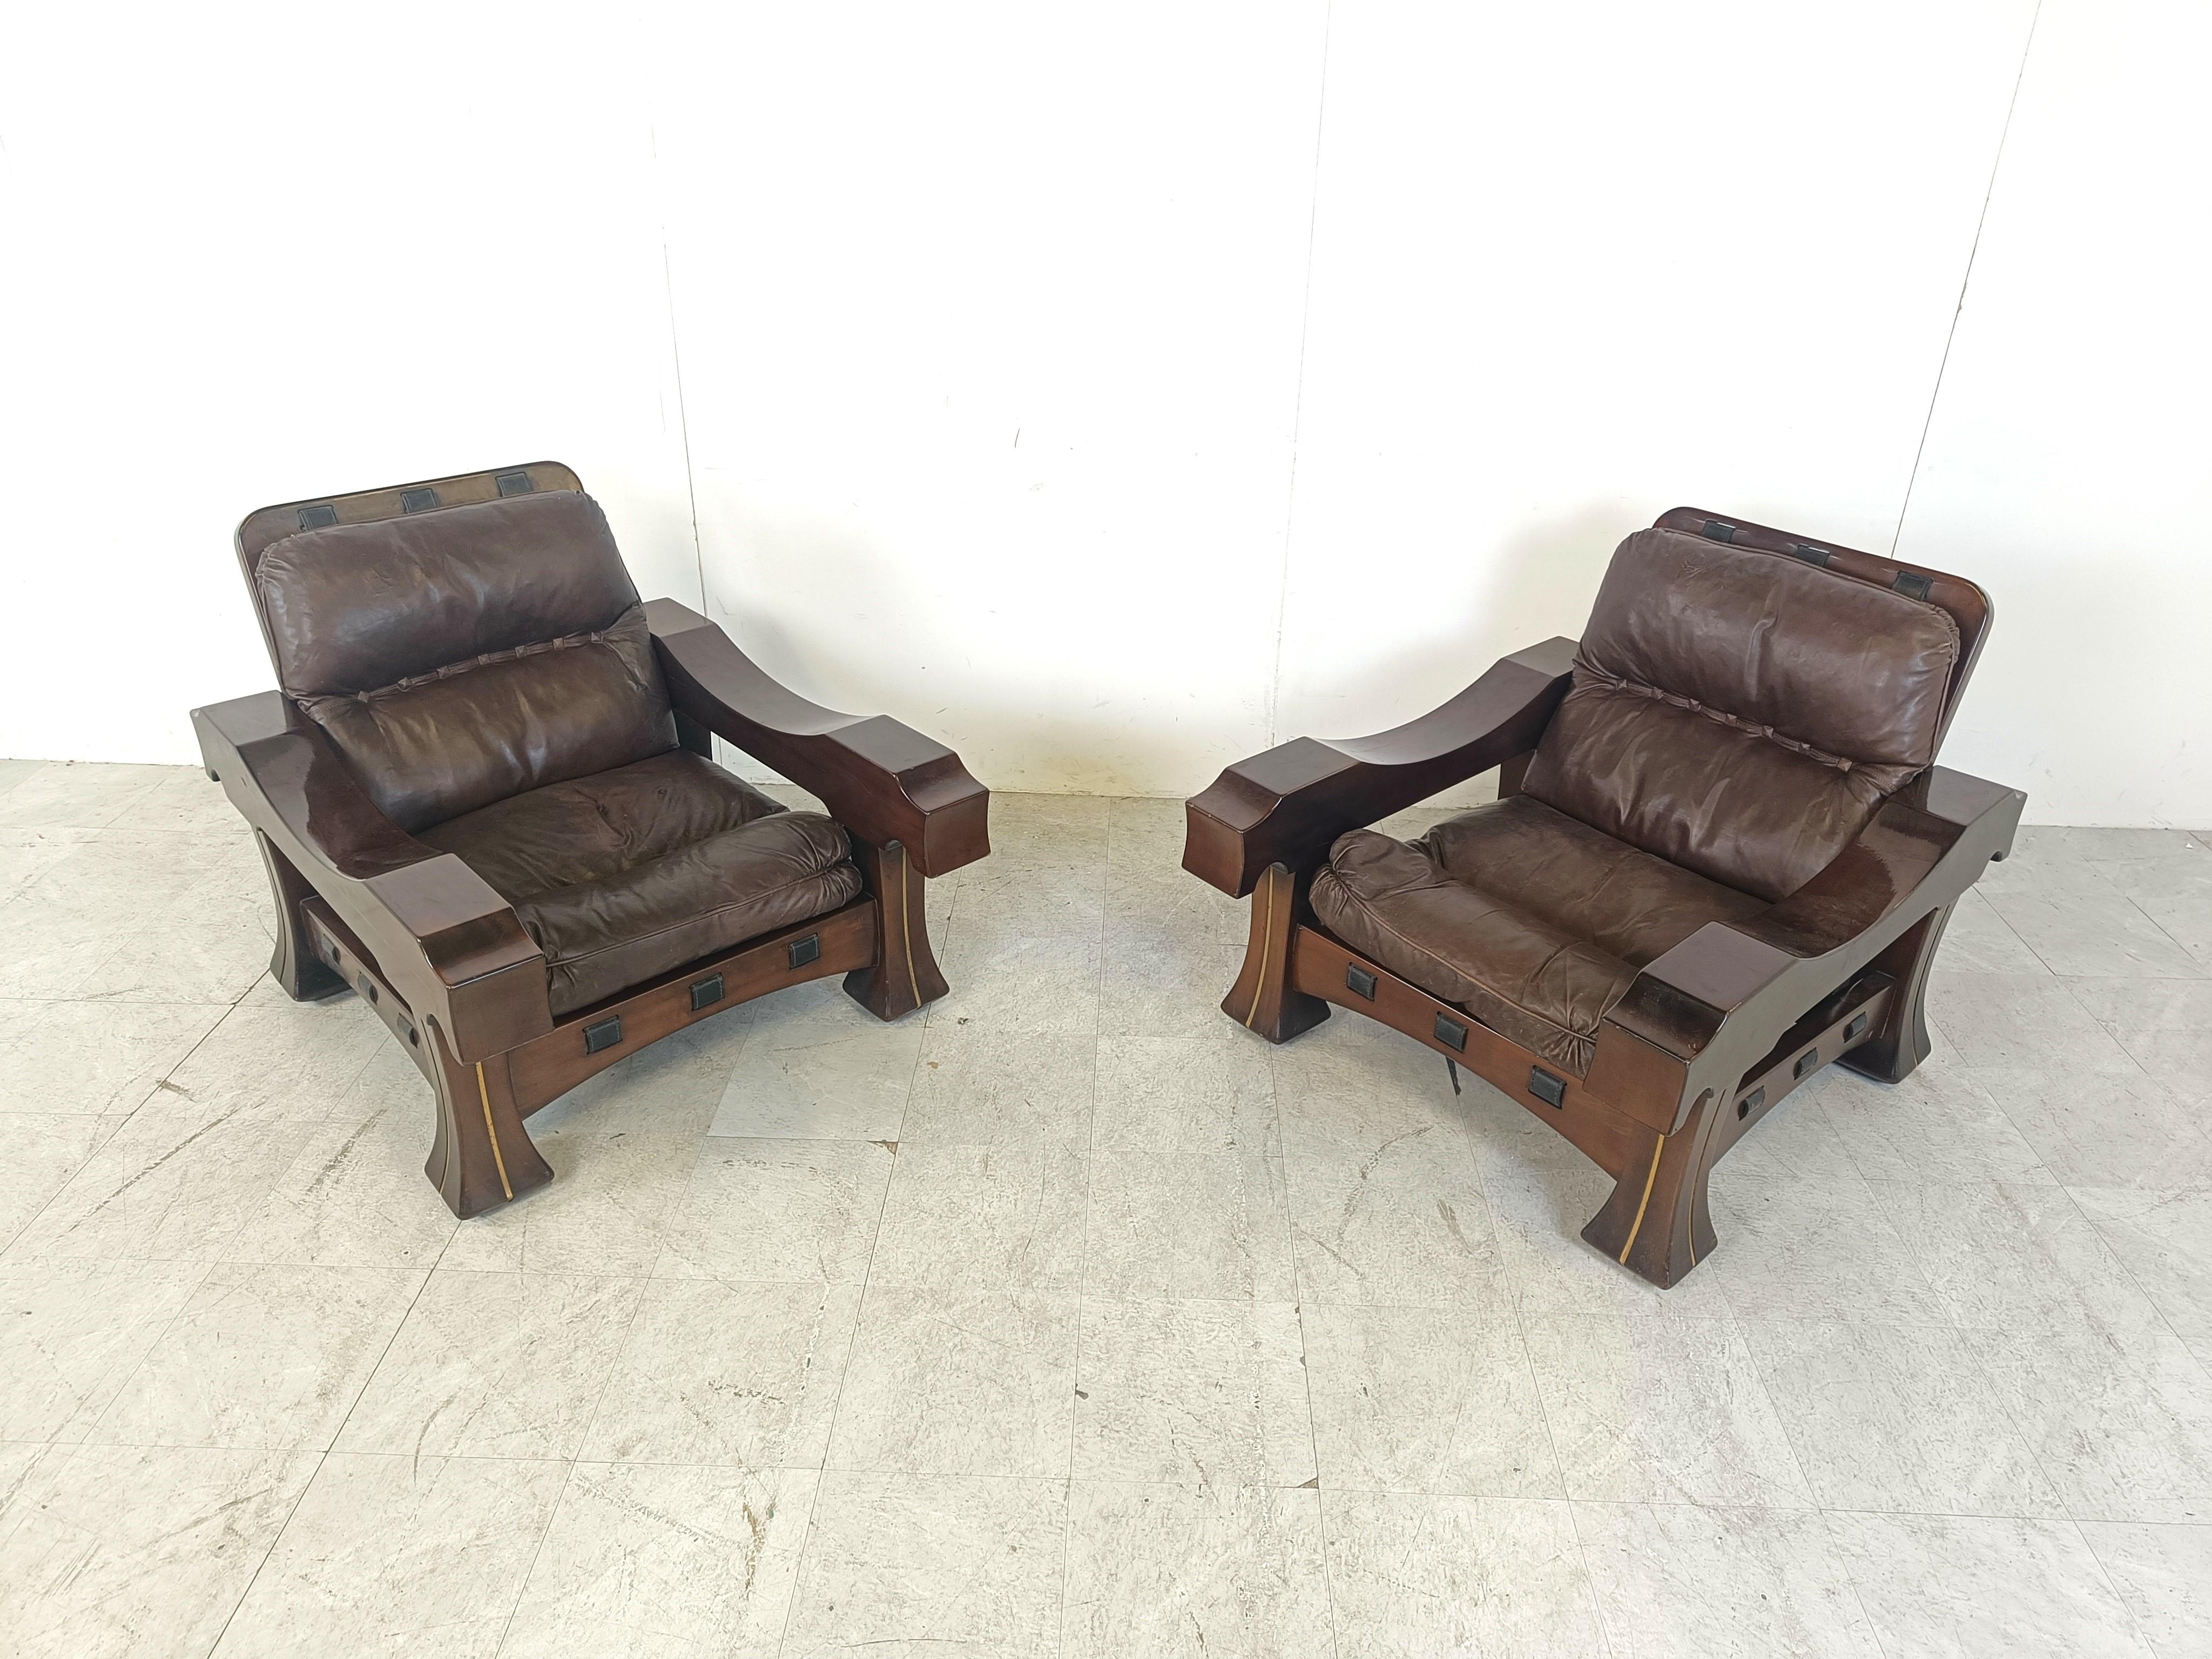 Zwei robuste Sessel aus der Mitte des Jahrhunderts Modell Ussaro - entworfen von Luciano Frigerio.

Diese schweren und sehr stabilen Holzsessel haben ein sehr brutales und solides Design, man kann sie nicht übersehen.

Sie sind mit Lederkissen und